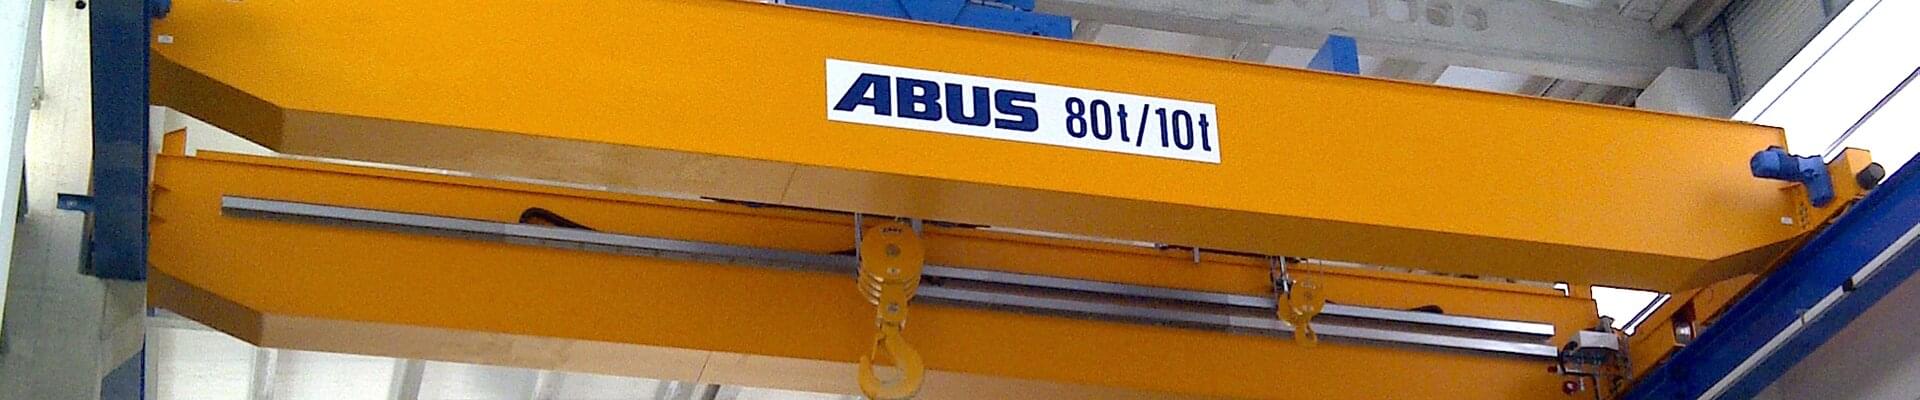 ABUS Laufkran mit 80t/10t Tragfähigkeit in Schiffsbauunternehmen im Nordwesten Spaniens 